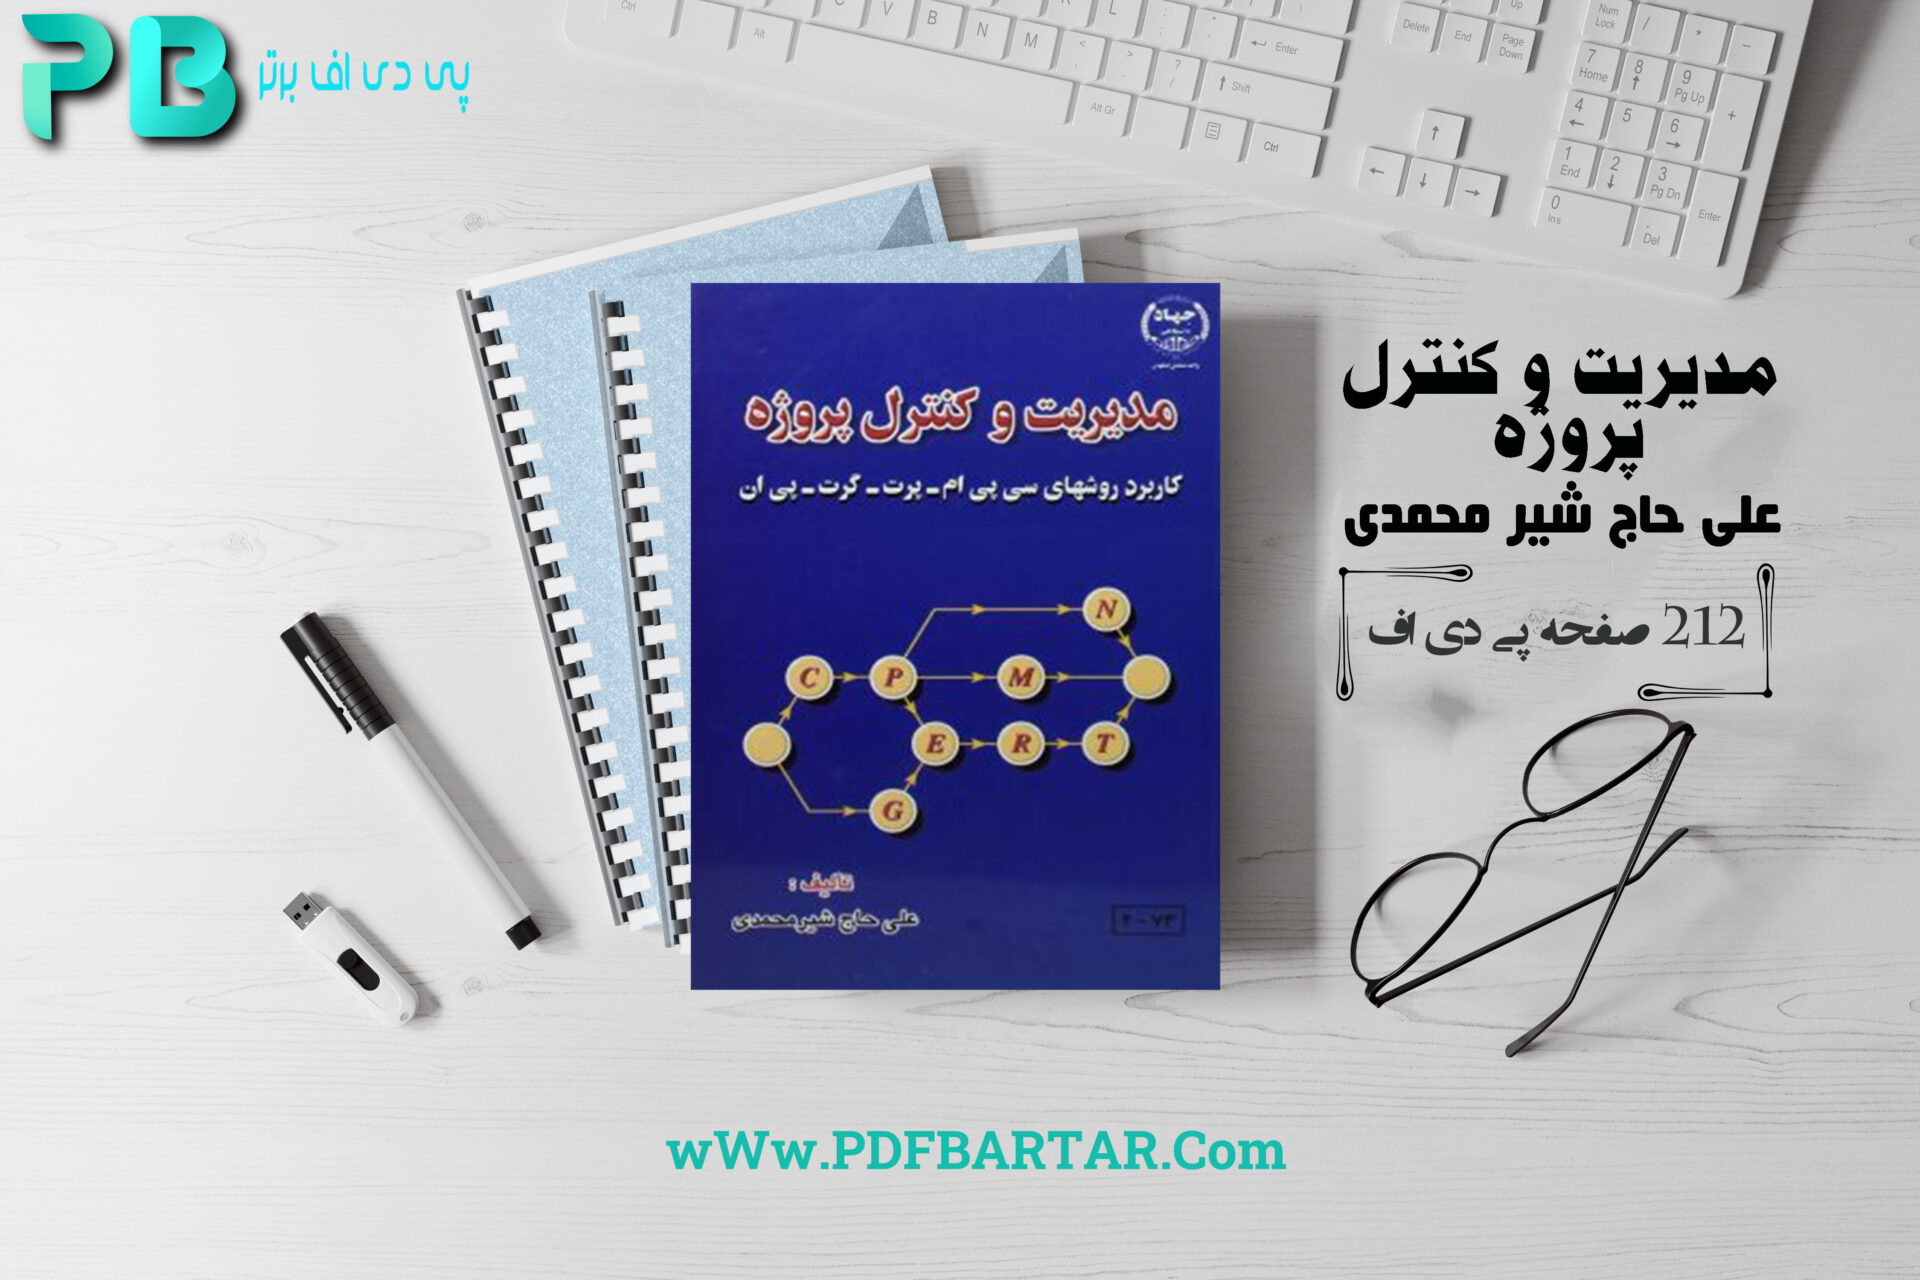  پی دی اف کتاب مدیریت و کنترل پروژه دکتر علی حاج شیر مجمدی PDF - پی دی اف برتر